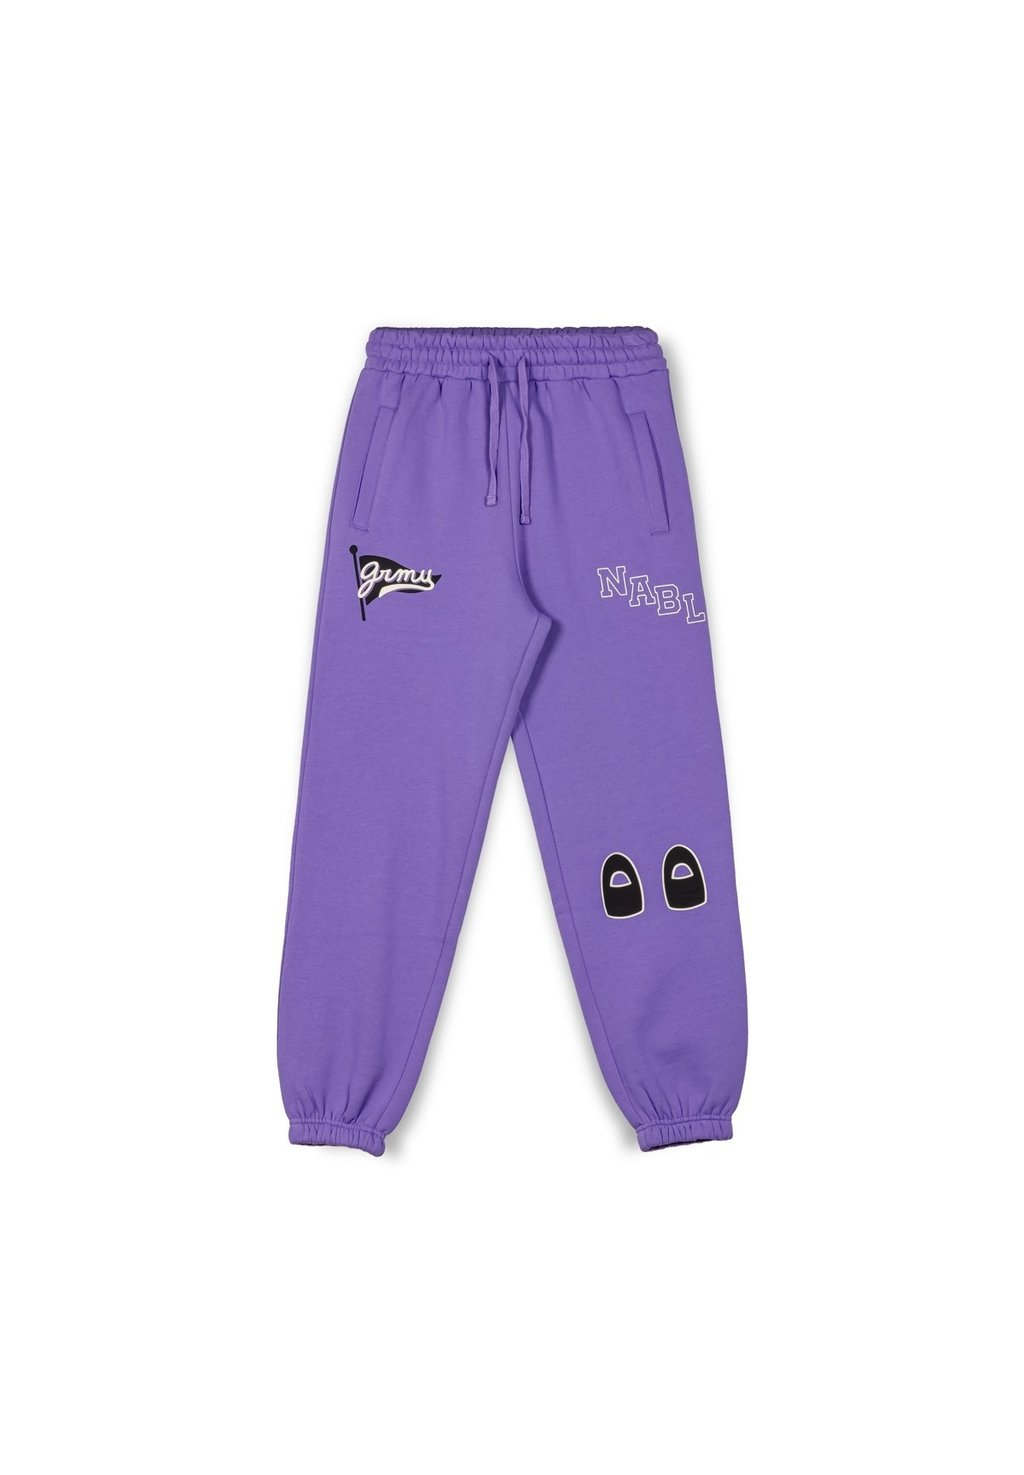 Спортивные брюки GRIMEY NABLUS Grimey, фиолетовый